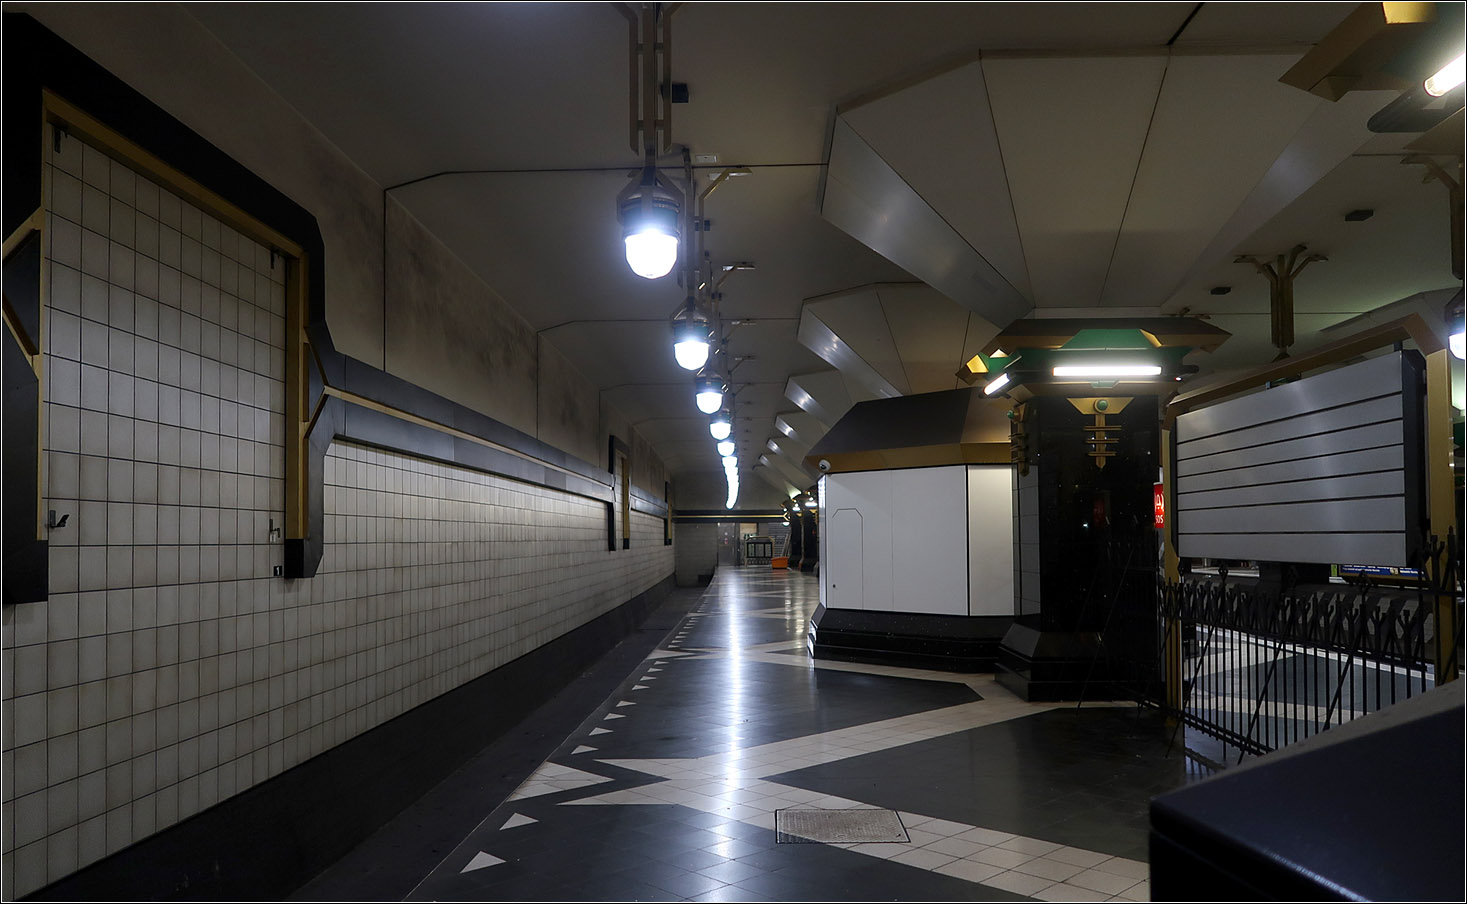 Die Geheimnisse der Berliner U-Bahn -

Blick in den ungenutzten Gleistrog für eine mögliche Verlängerung der U2 auf der Westseite des U-Bahnhofes. Die U2 würde auf den Außengleisen des viergleisigen Bahnhofes verkehren. Interessant ist dabei, dass sie im Linksverkehr fahren würde um einen direkten Umstieg in die Gegenrichtung der U7 zu ermöglichen. Vor und nach der Station würden dazu unterirdische Überwerfungsbauwerke die Eigenkreuzung der U2 ermöglichen. 

Die (noch) ungenutzten Bahnsteigbereich sind durch ein Zaun von den U7-Bereichen abgetrennt. Hier ein Blick durch diesen Zaun.

14.07.2023 (M)